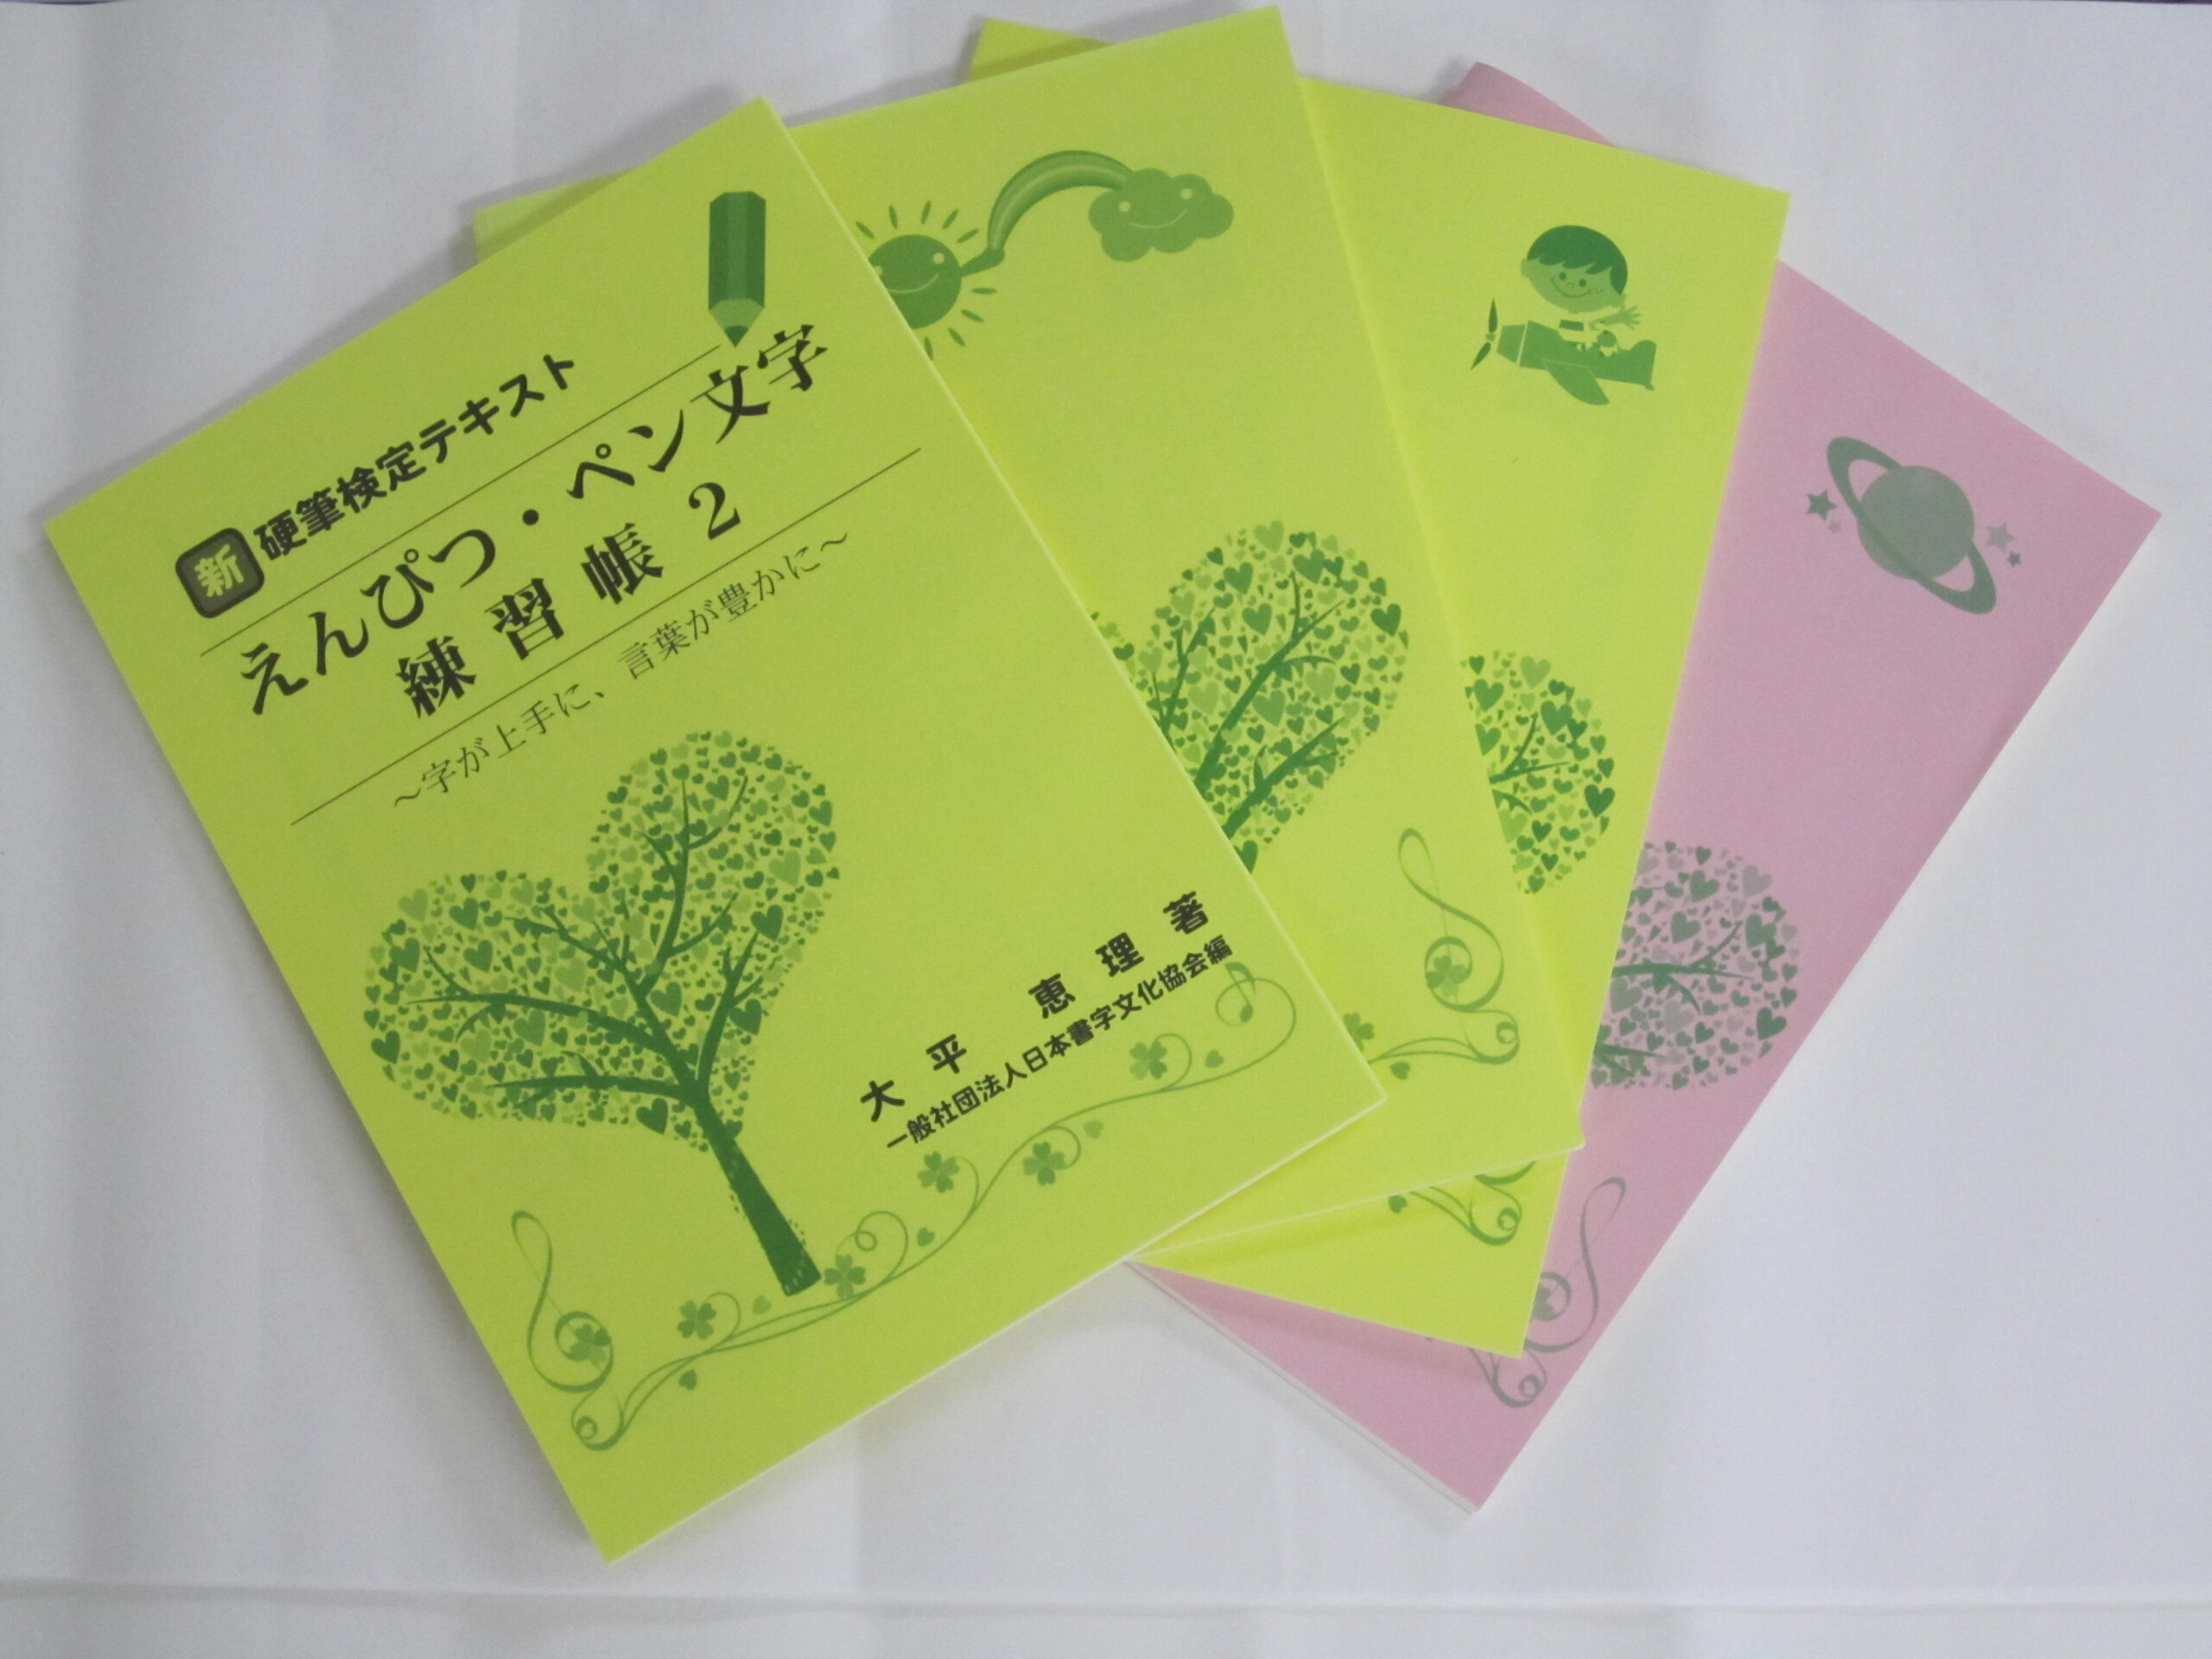 書文協発行テキスト 教材教具 日本書字文化協会は公共性高く理想を掲げ 文字文化の伝承や発展の為に貢献する団体です